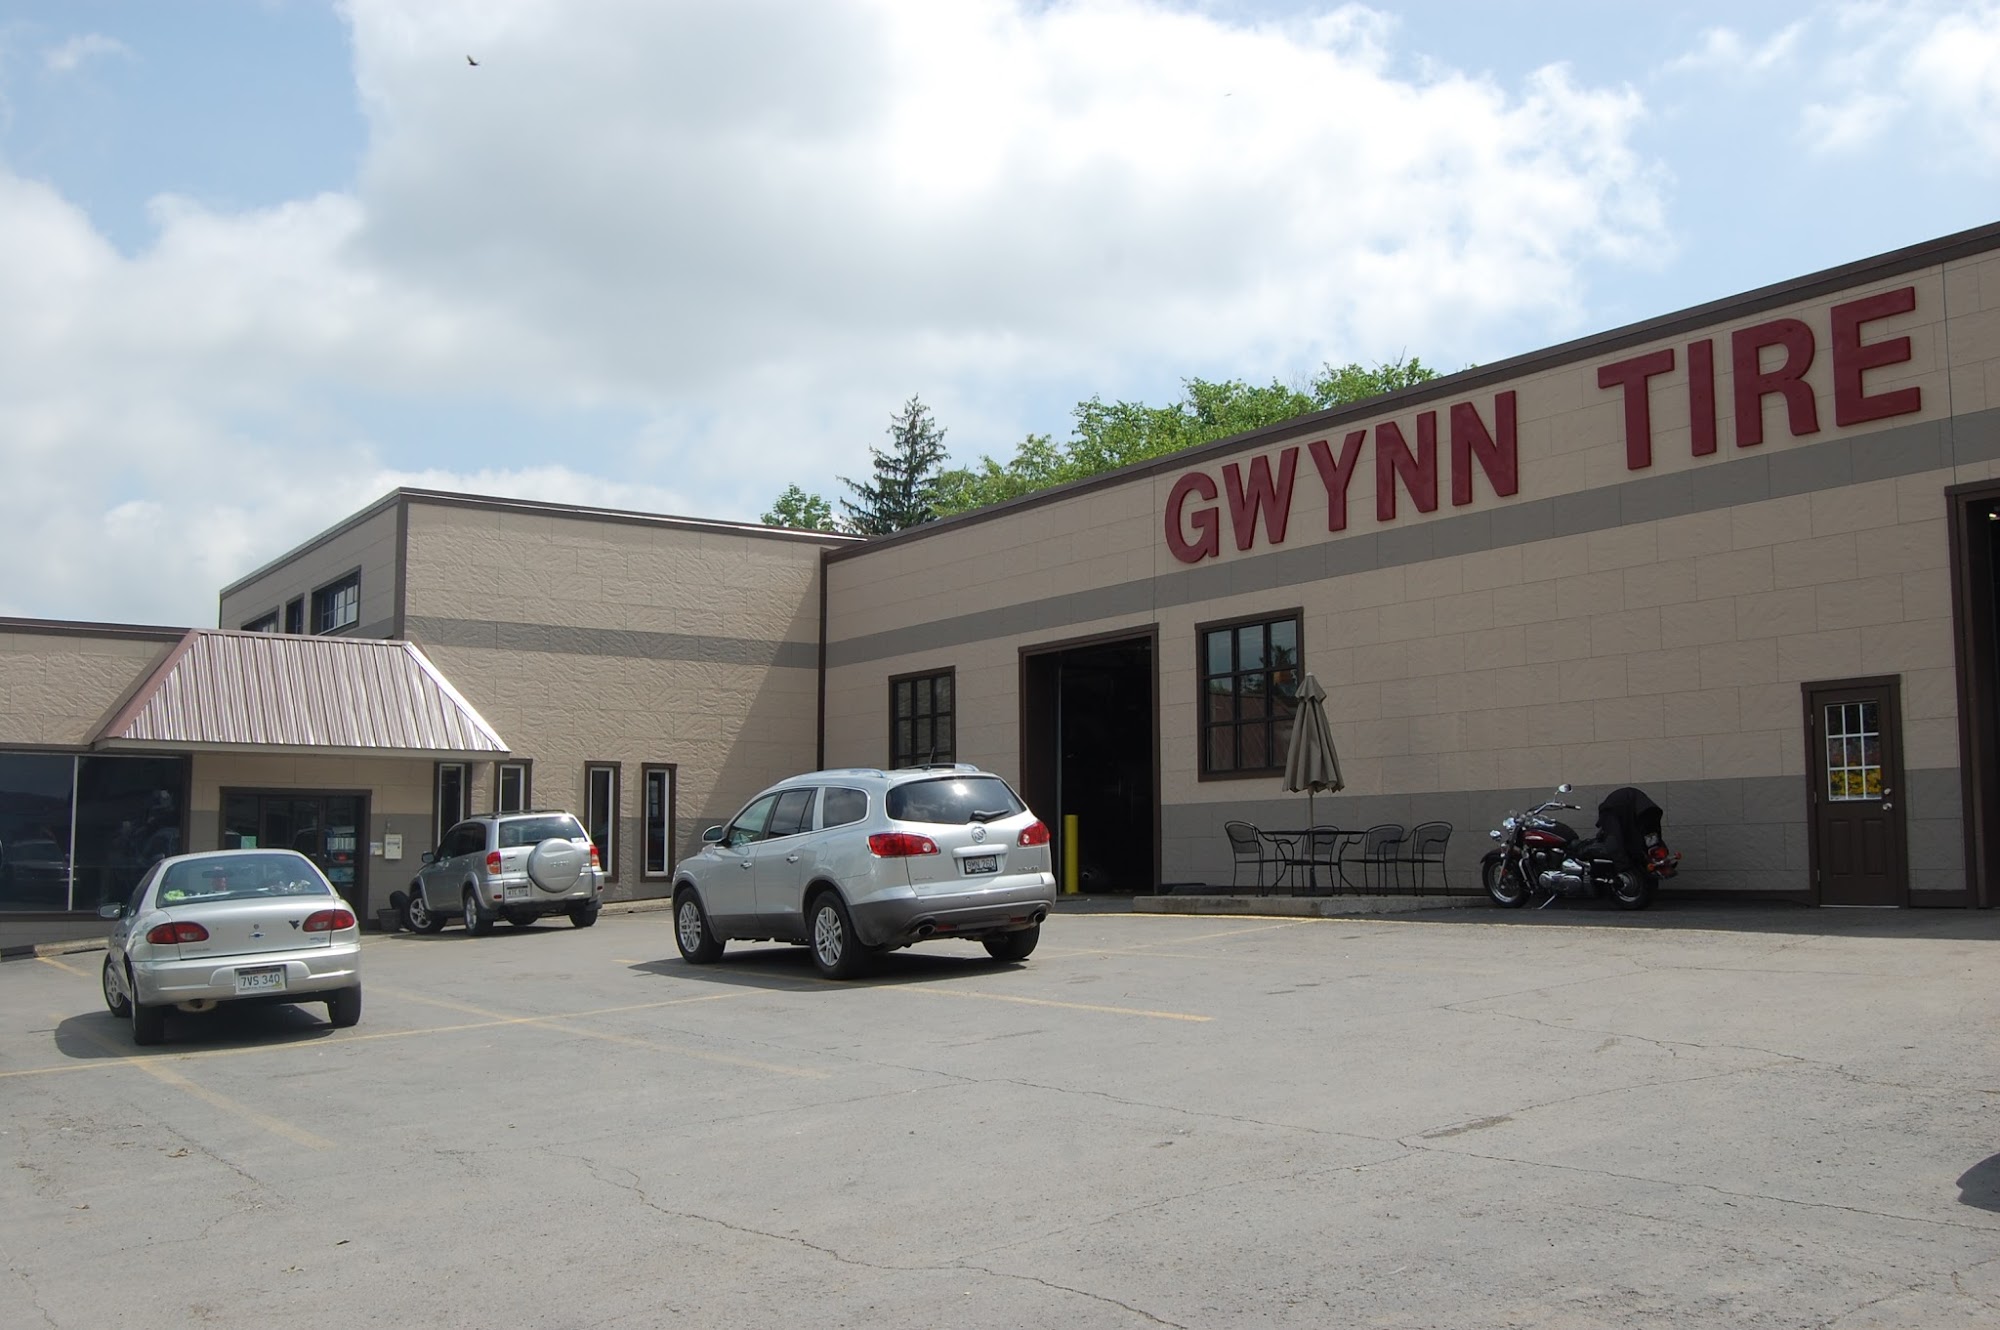 Gwynn Tire Service